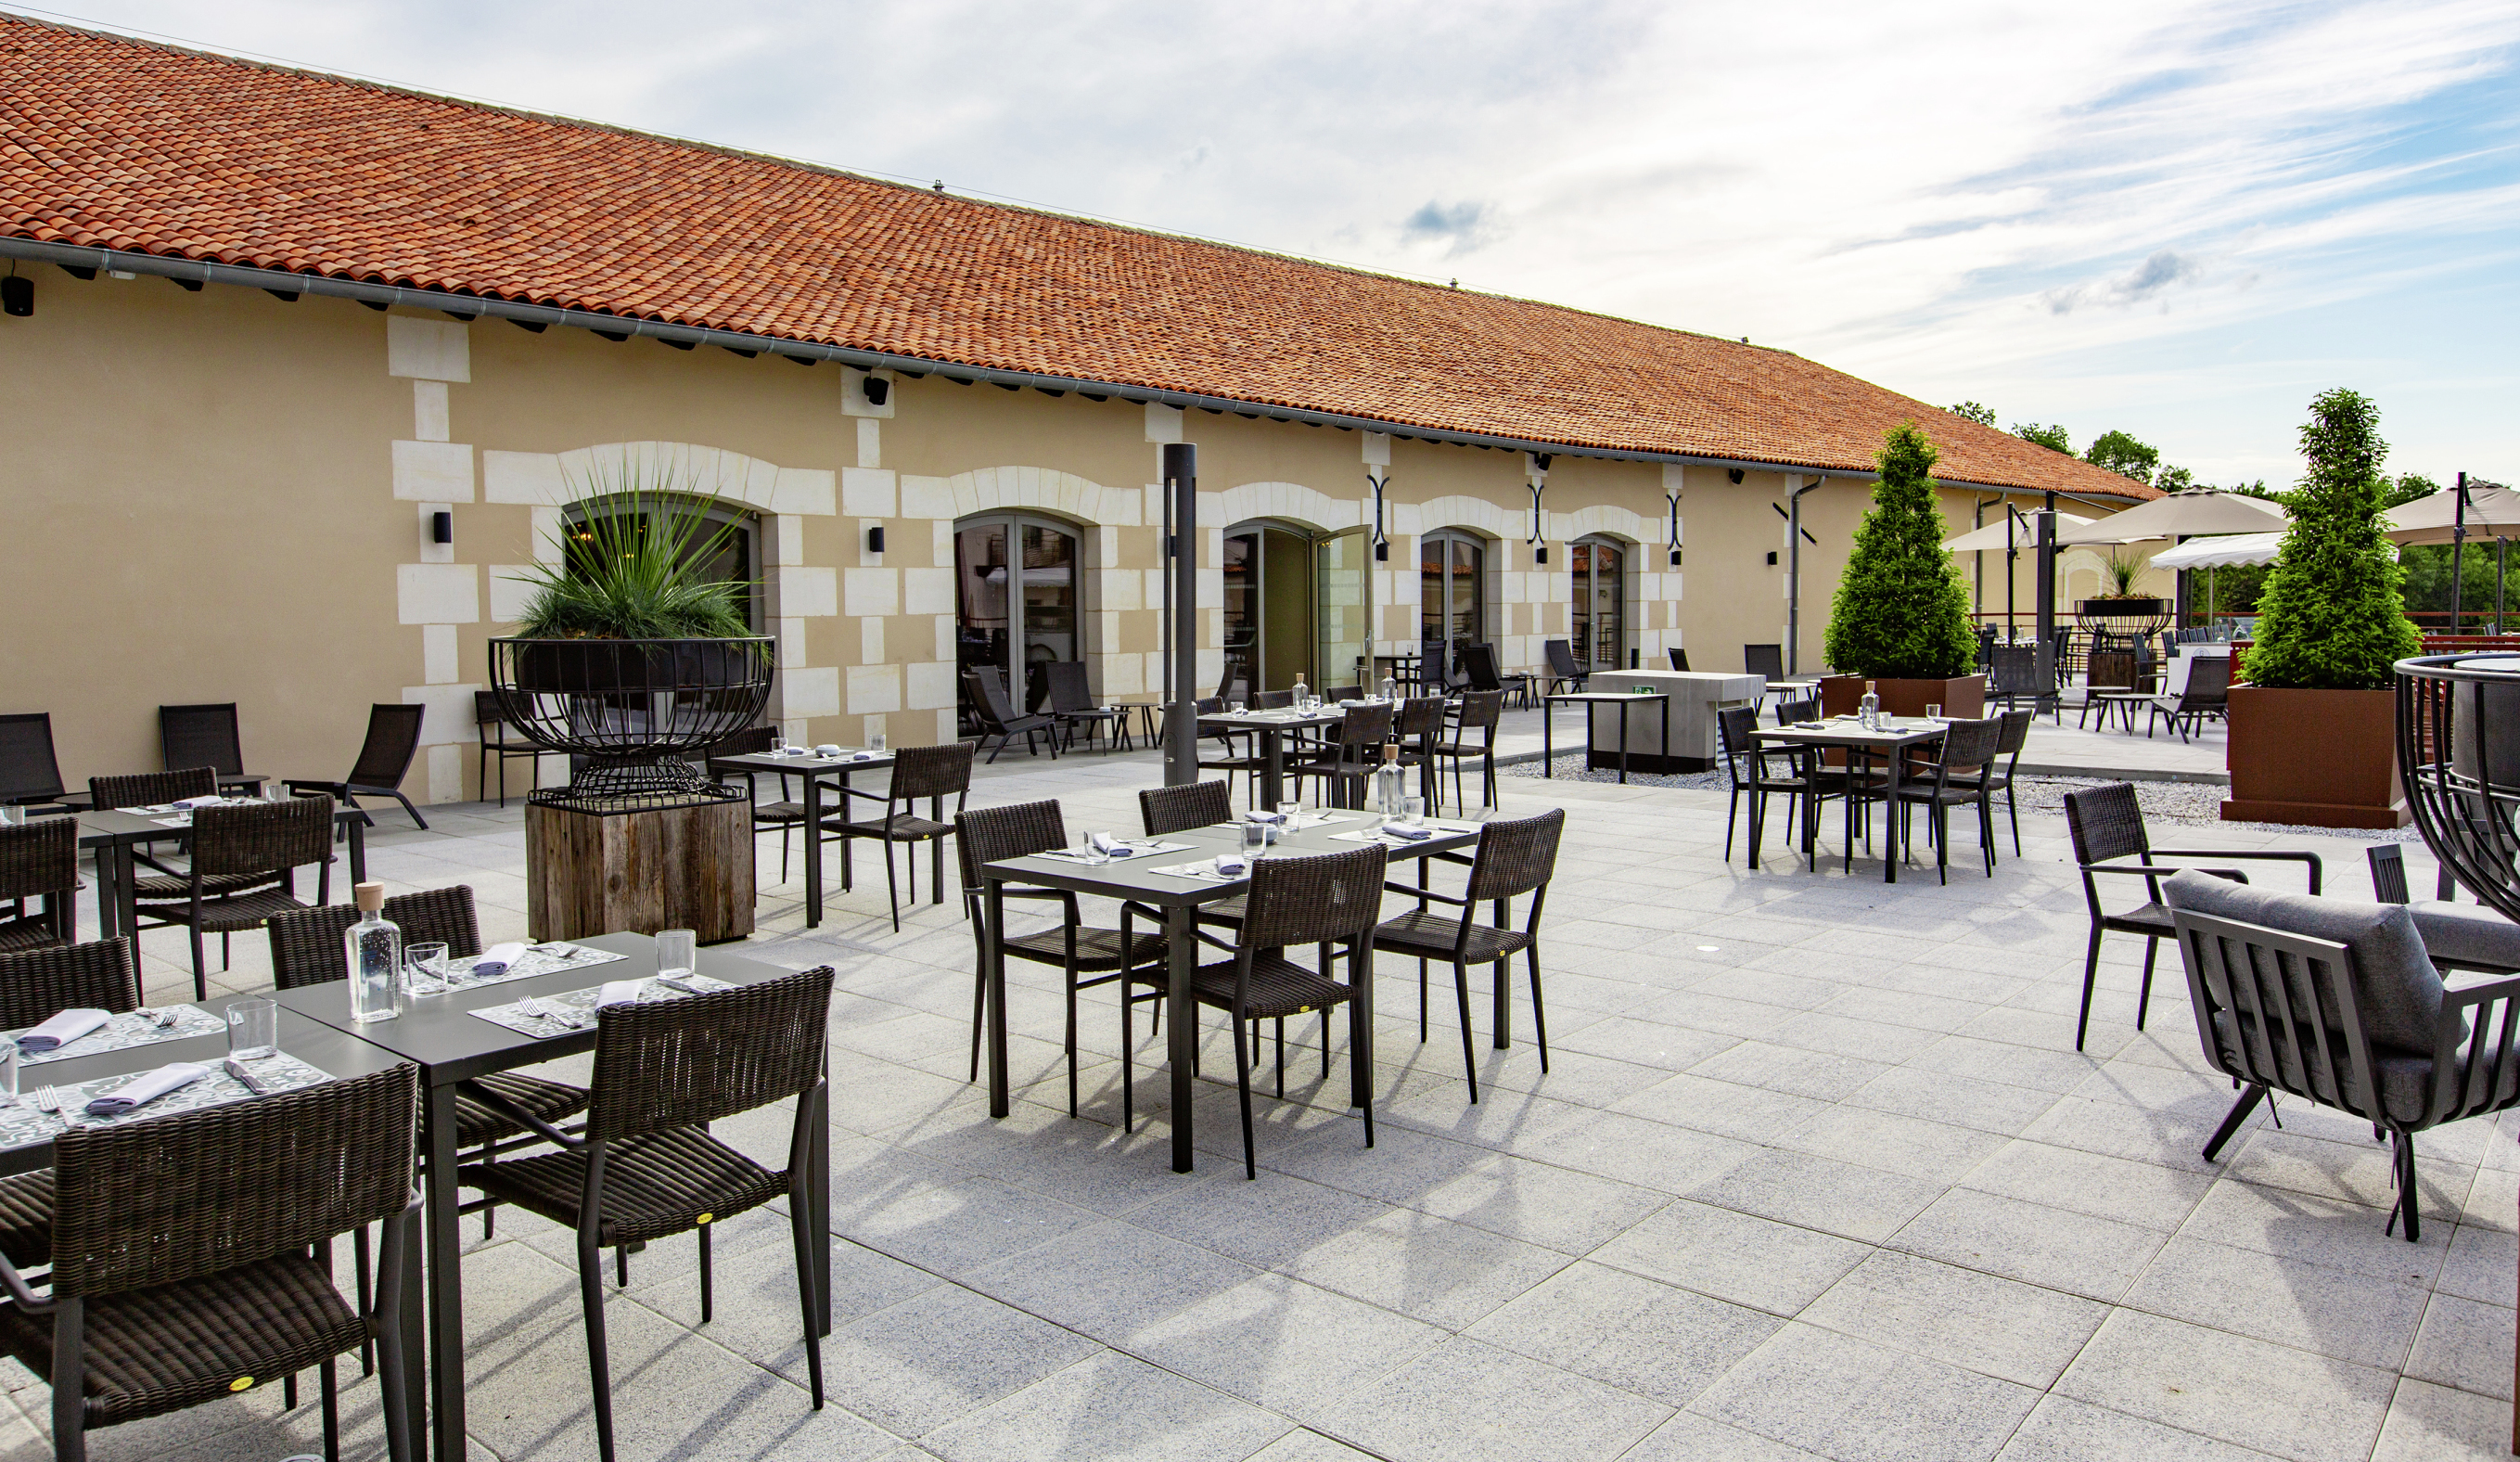 La protection des 790 m² de terrasse de la brasserie est composée de dalles gravillons sur plots. 